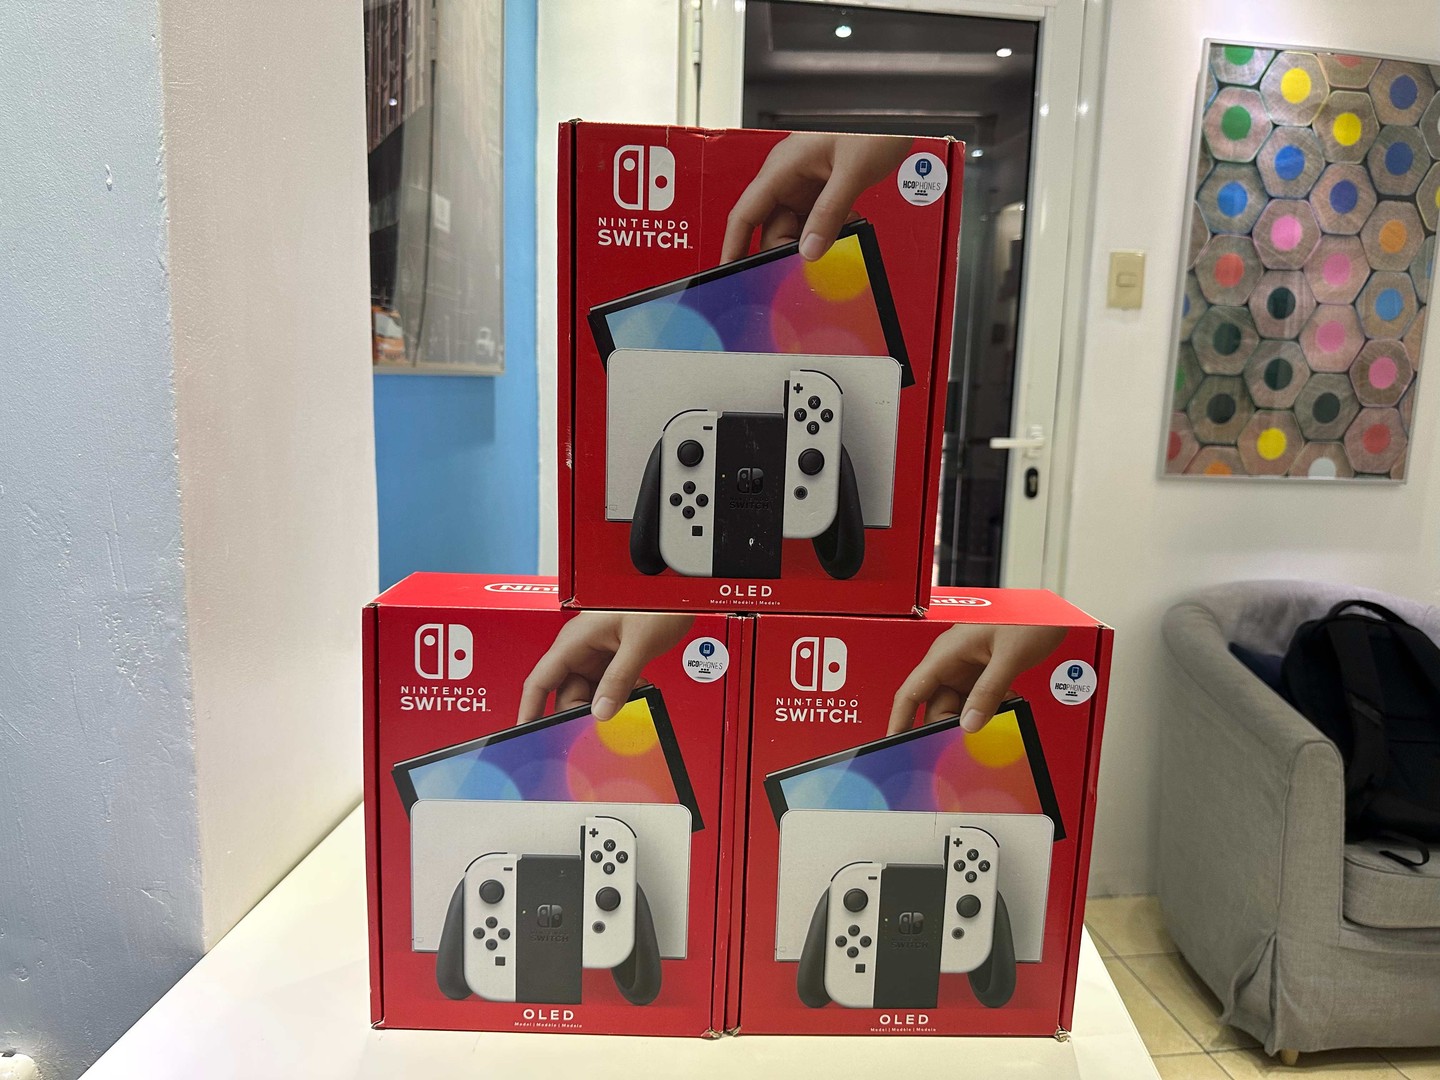 consolas y videojuegos - Nintendo Switch Oled Nuevos Sellados, Originales RD$ 19,200 NEG/ TIENDA 0